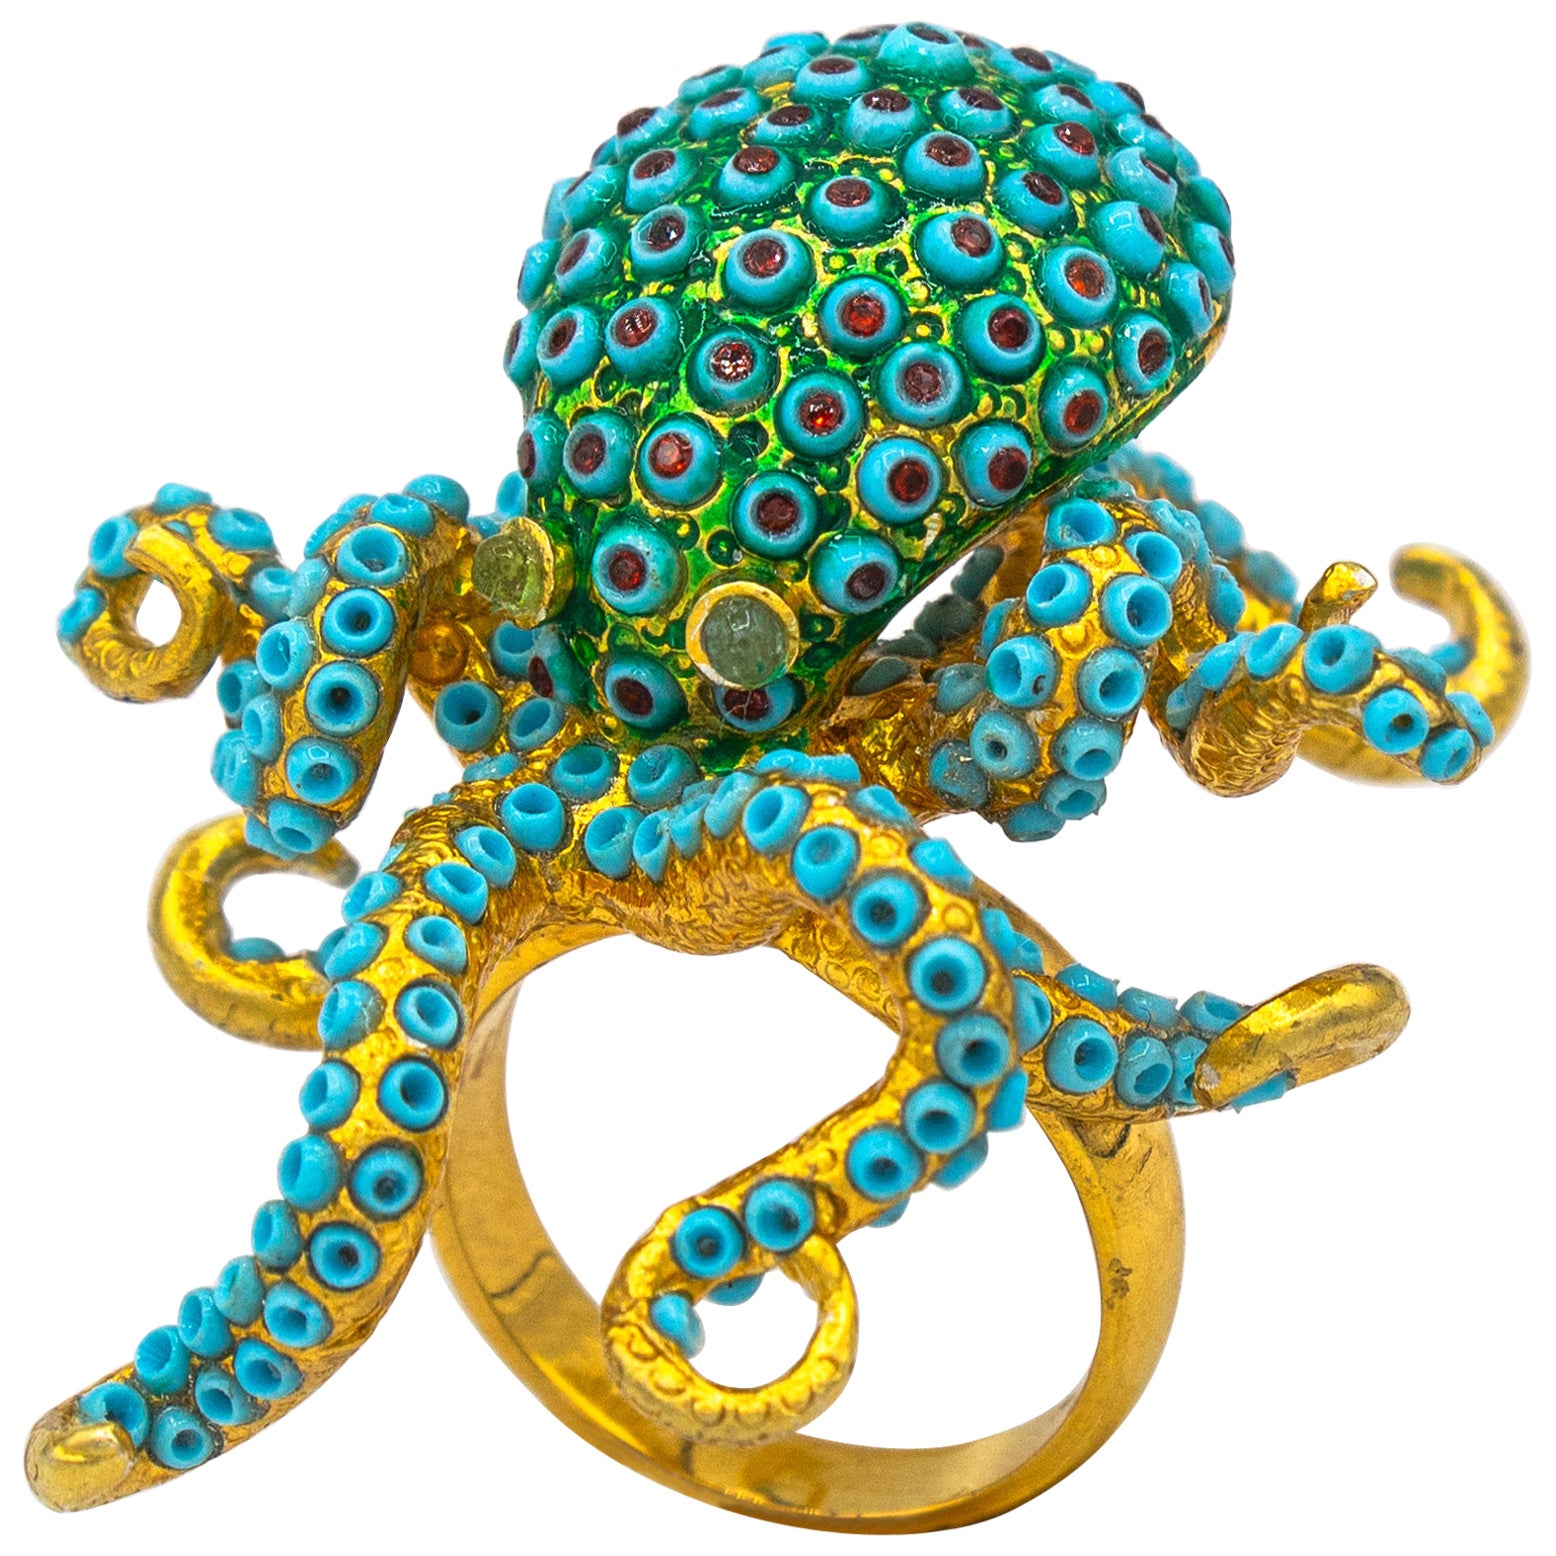 Bague cocktail Octopus en or jaune, turquoise et émeraude, de style Art nouveau, fabriquée à la main